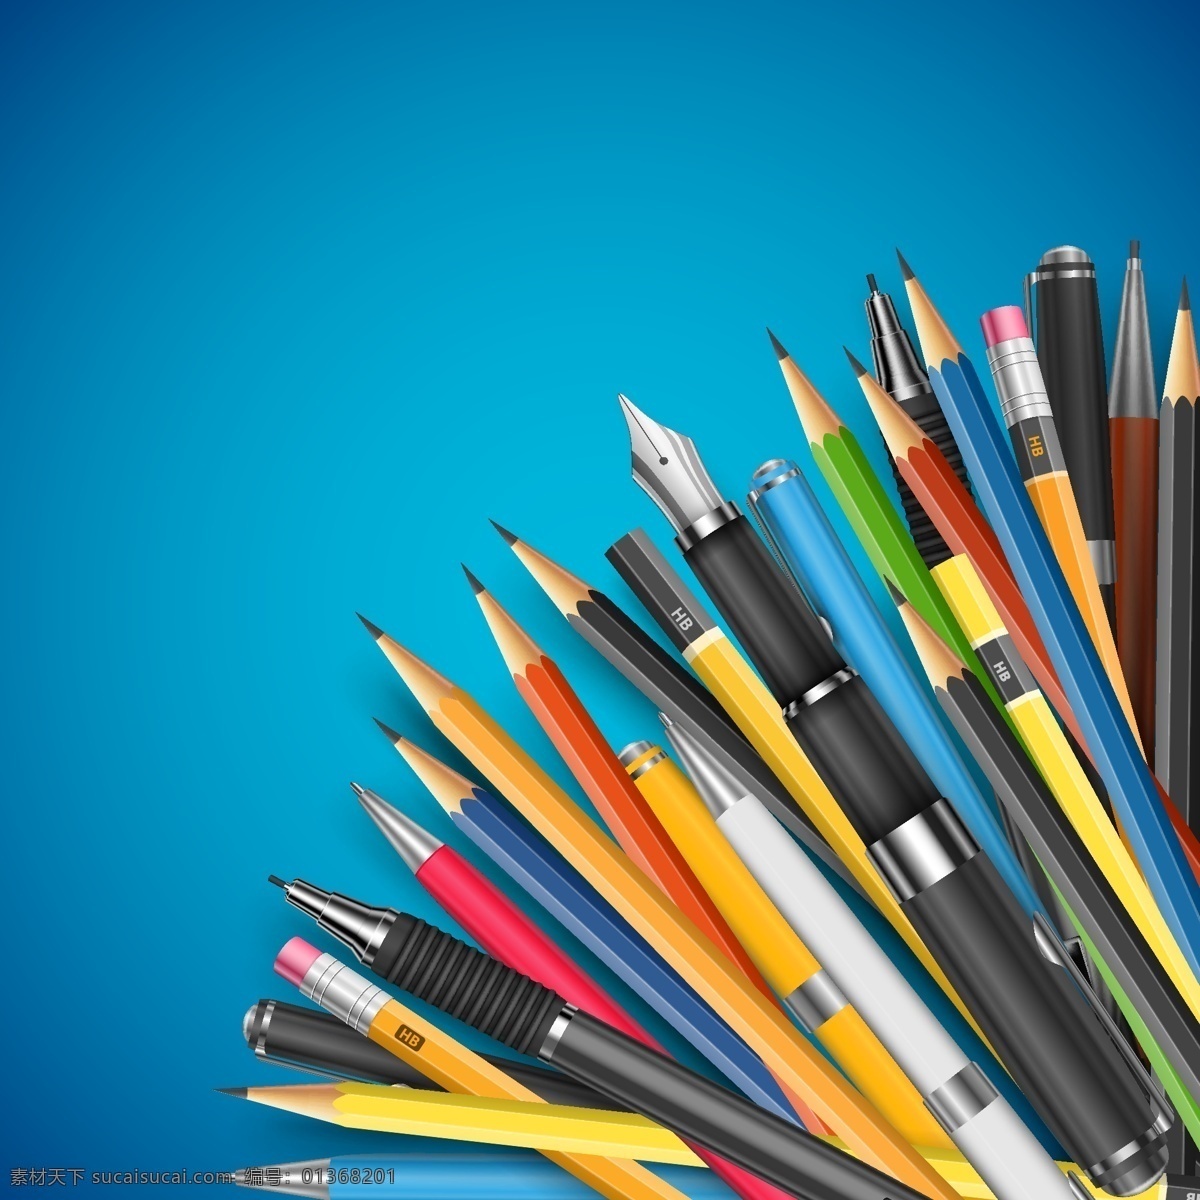 学习用品 回到学校 学习 读书 彩色铅笔 手绘 矢量素材 生活百科 矢量